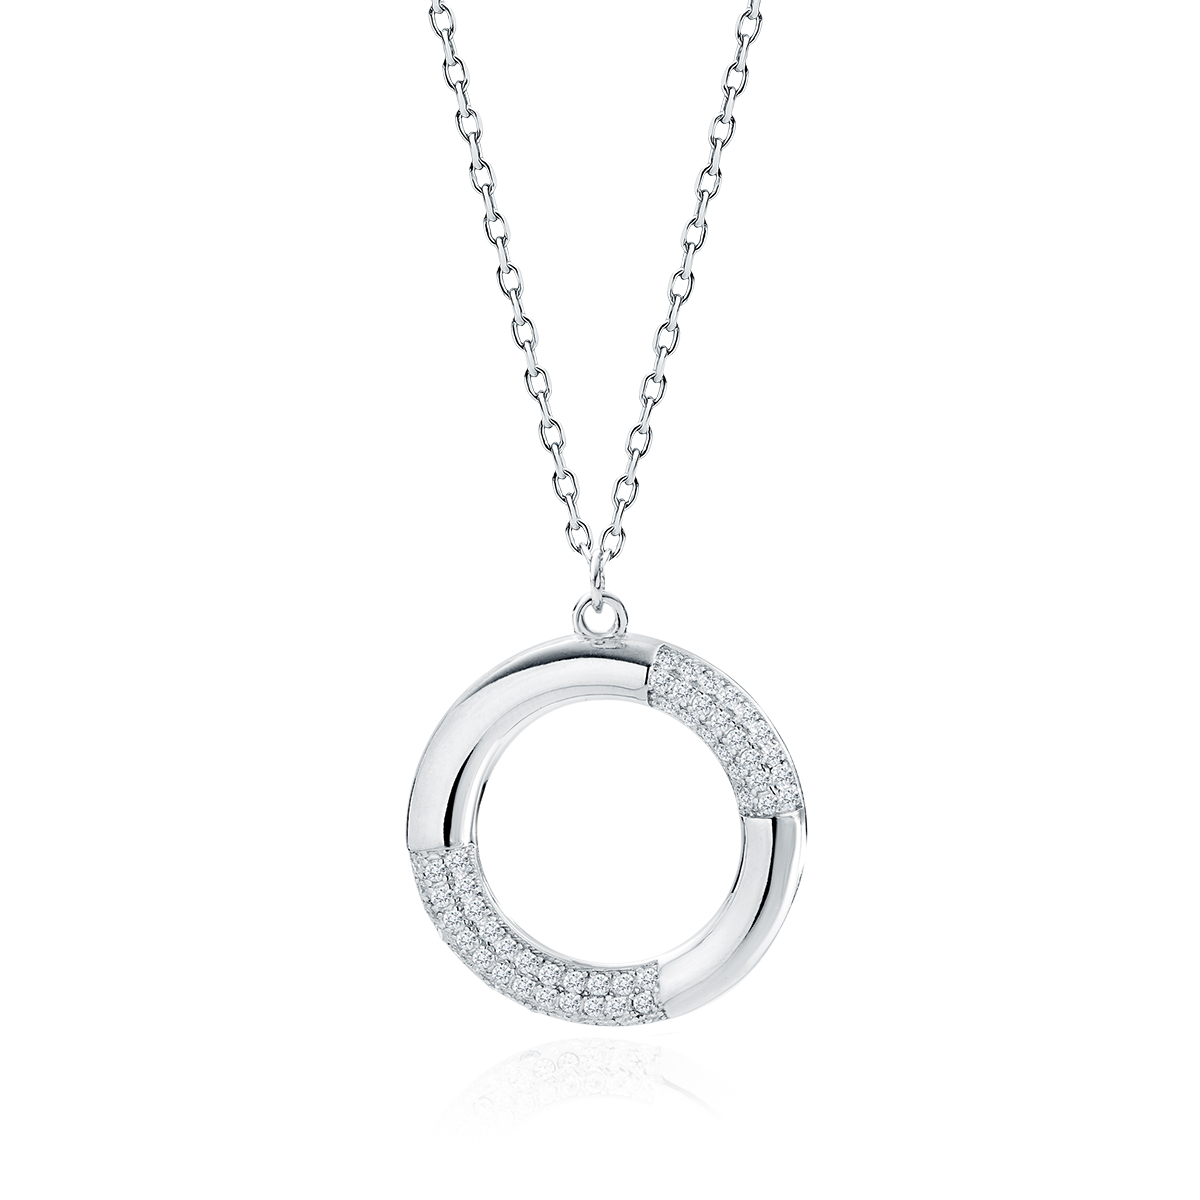 Stříbrný náhrdelník s kruhem 19 mm